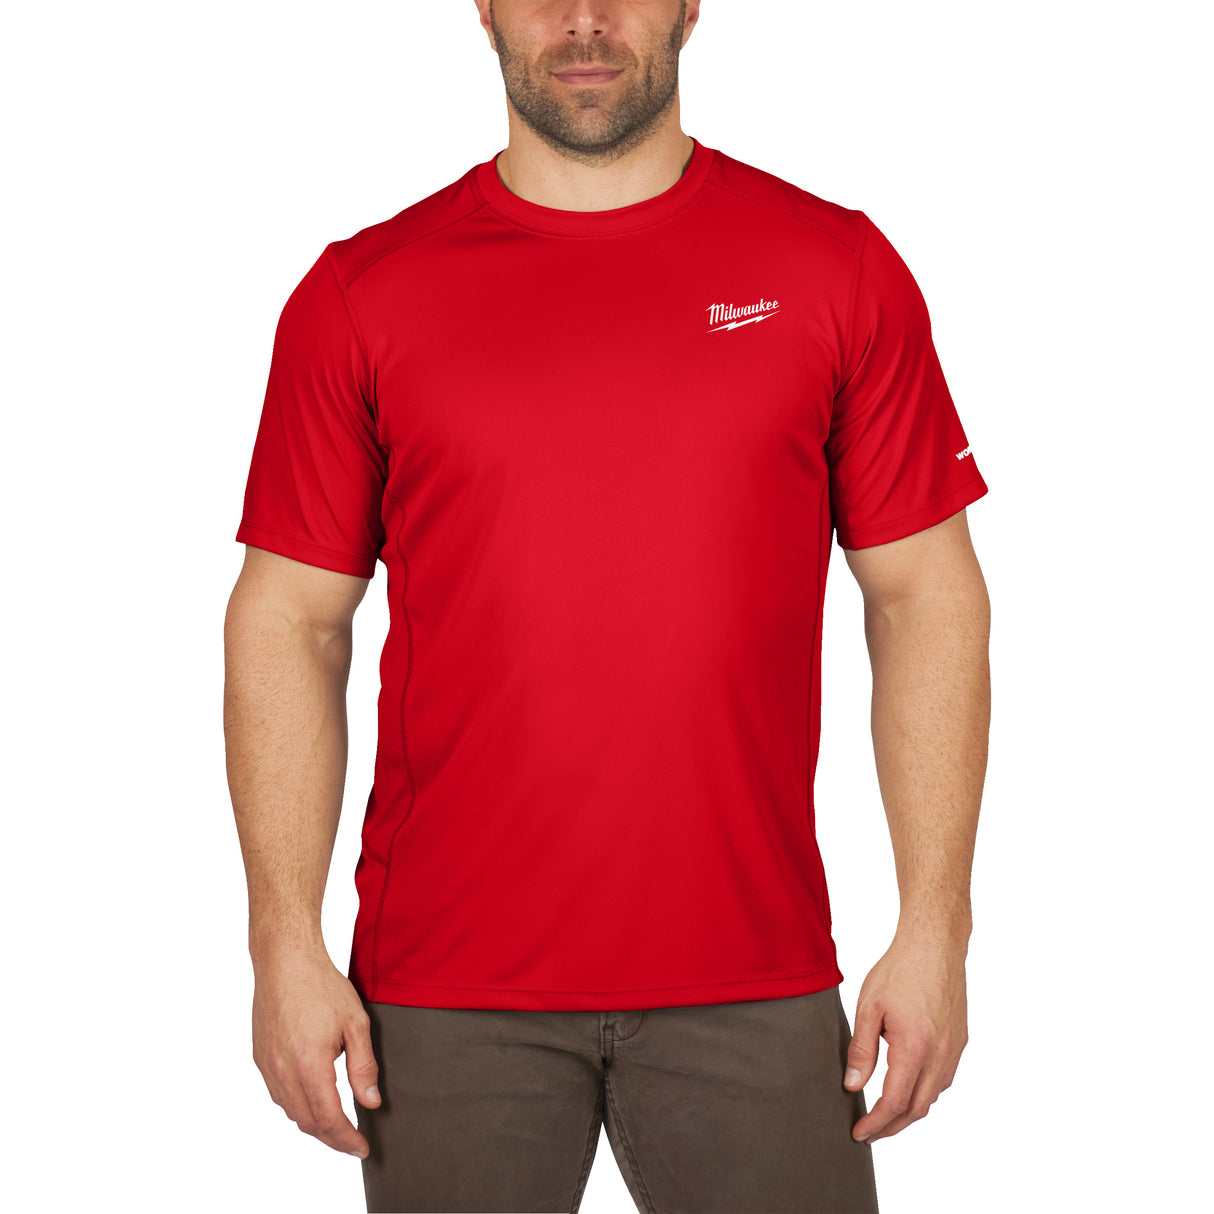 Milwaukee Funktions-T-Shirt WWSSRD-L 4932493070 roteswerkzeug